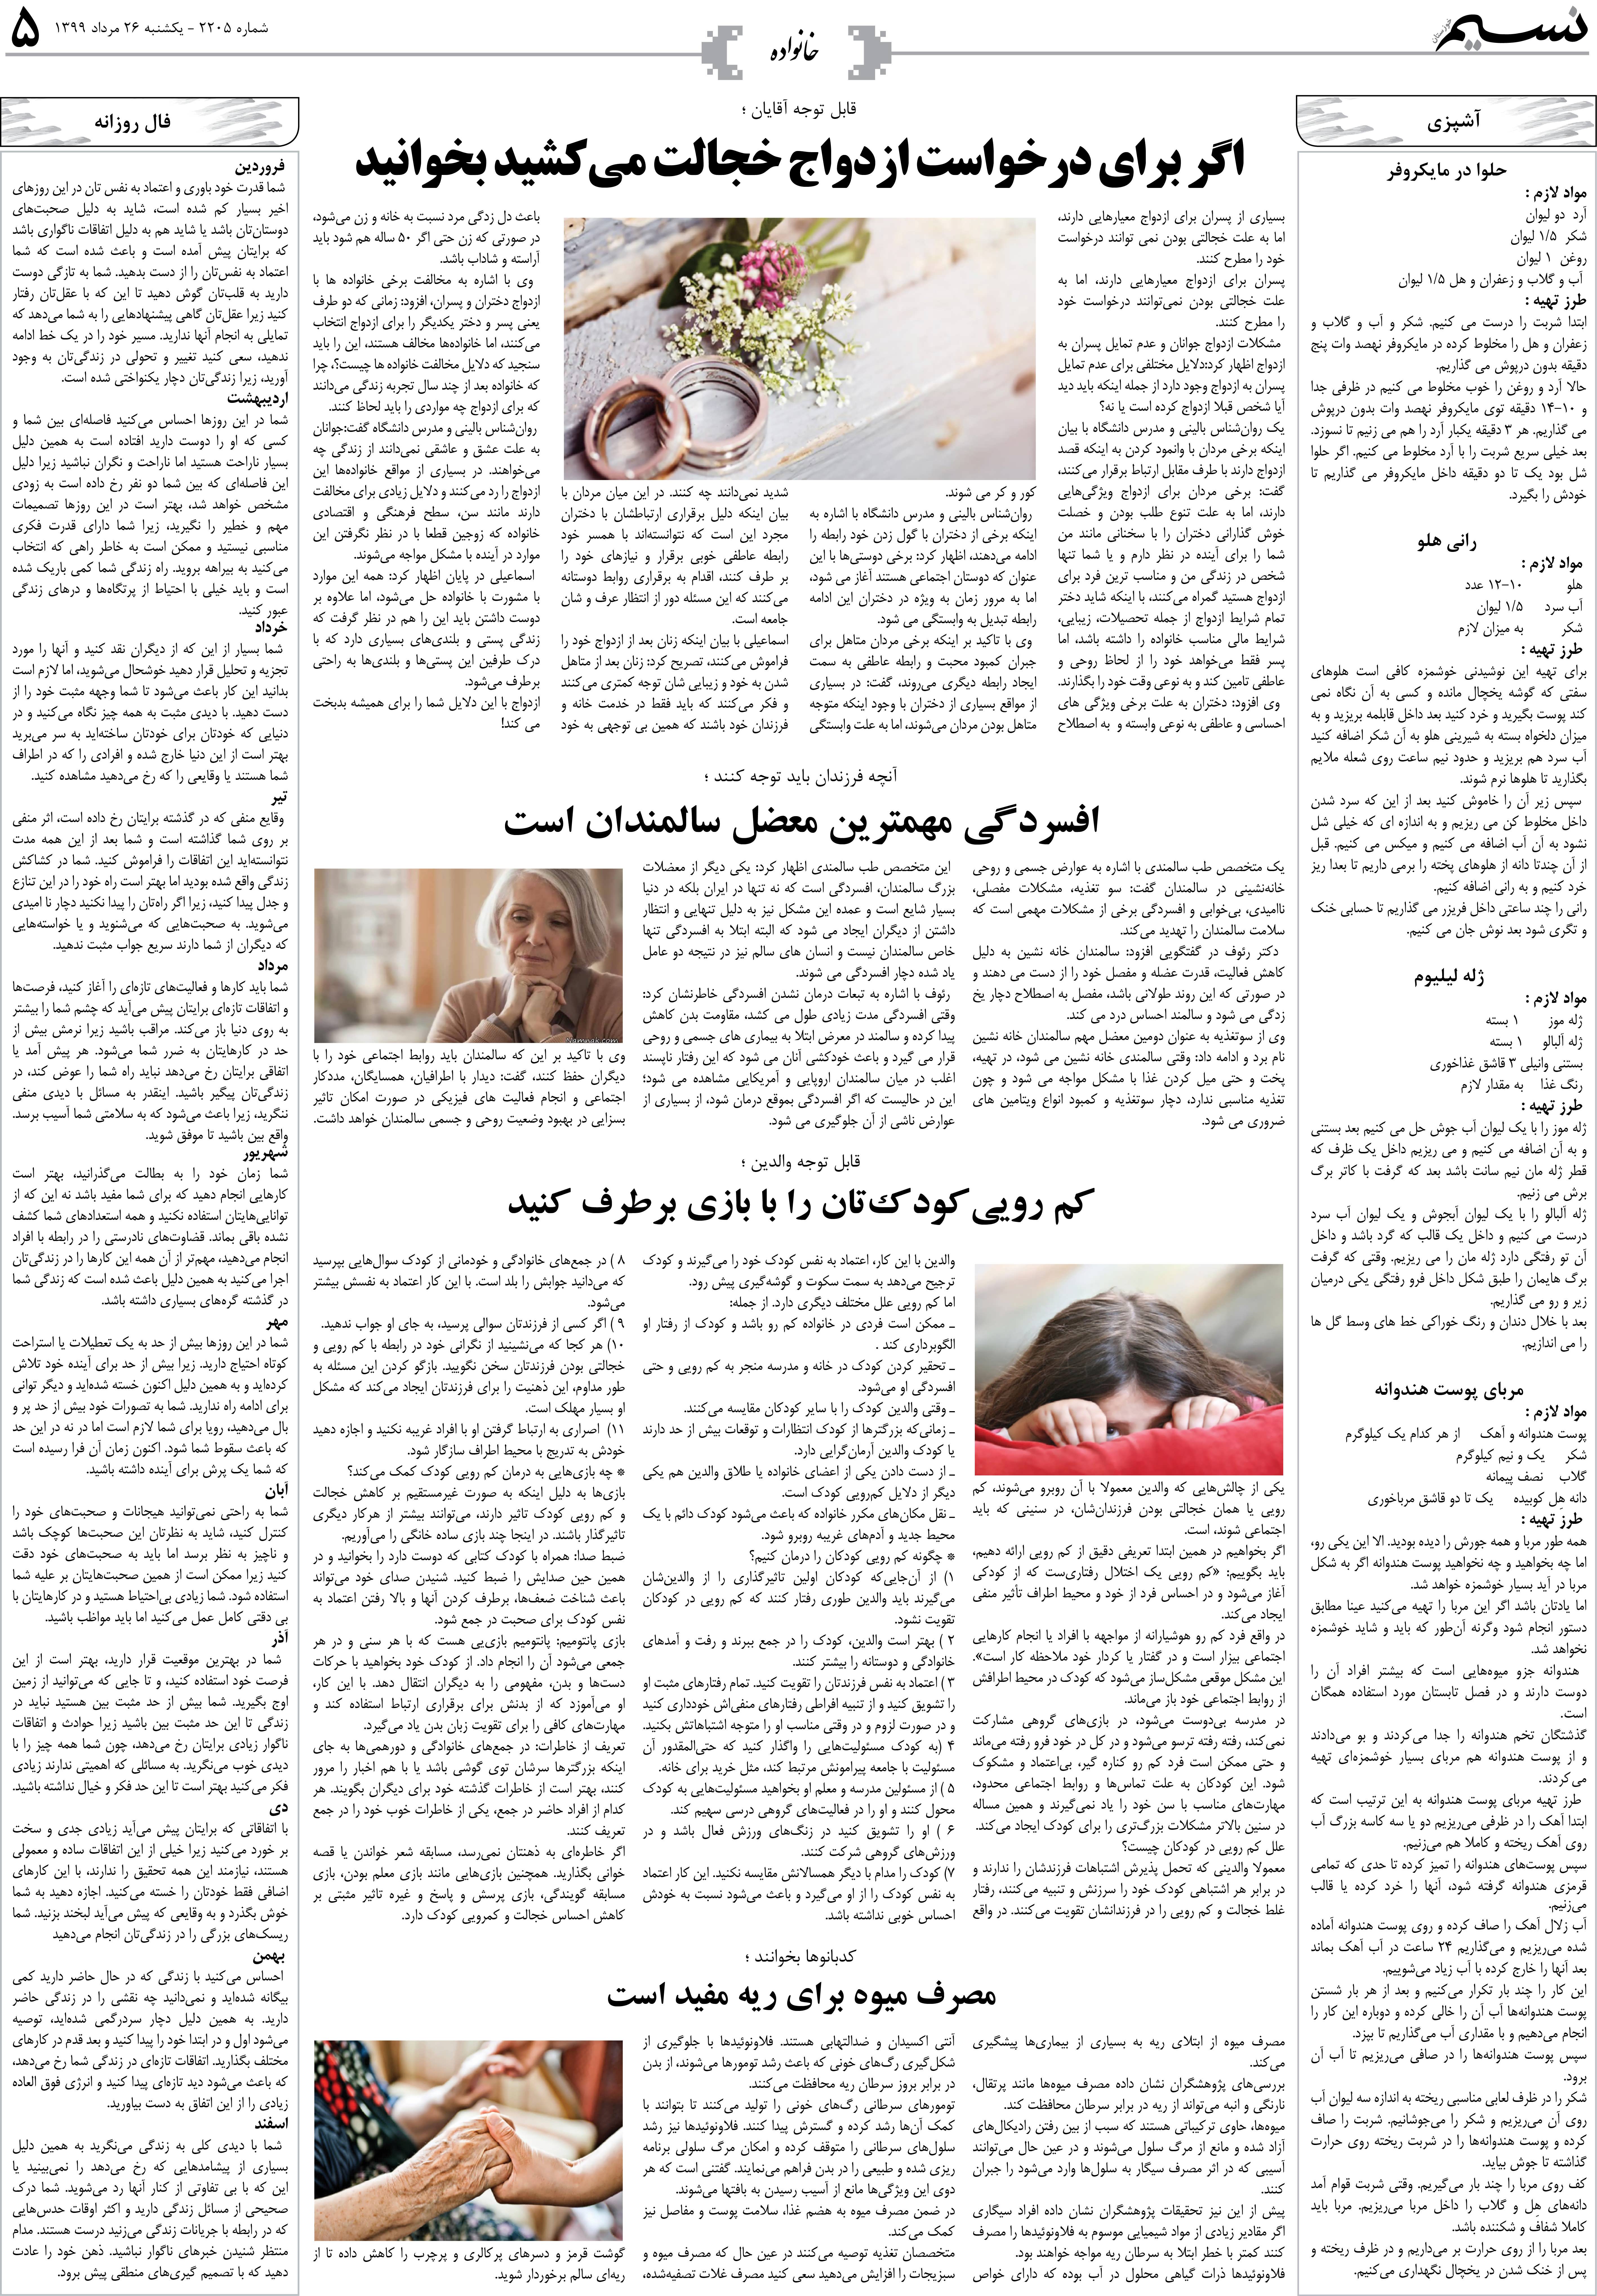 صفحه خانواده روزنامه نسیم شماره 2205